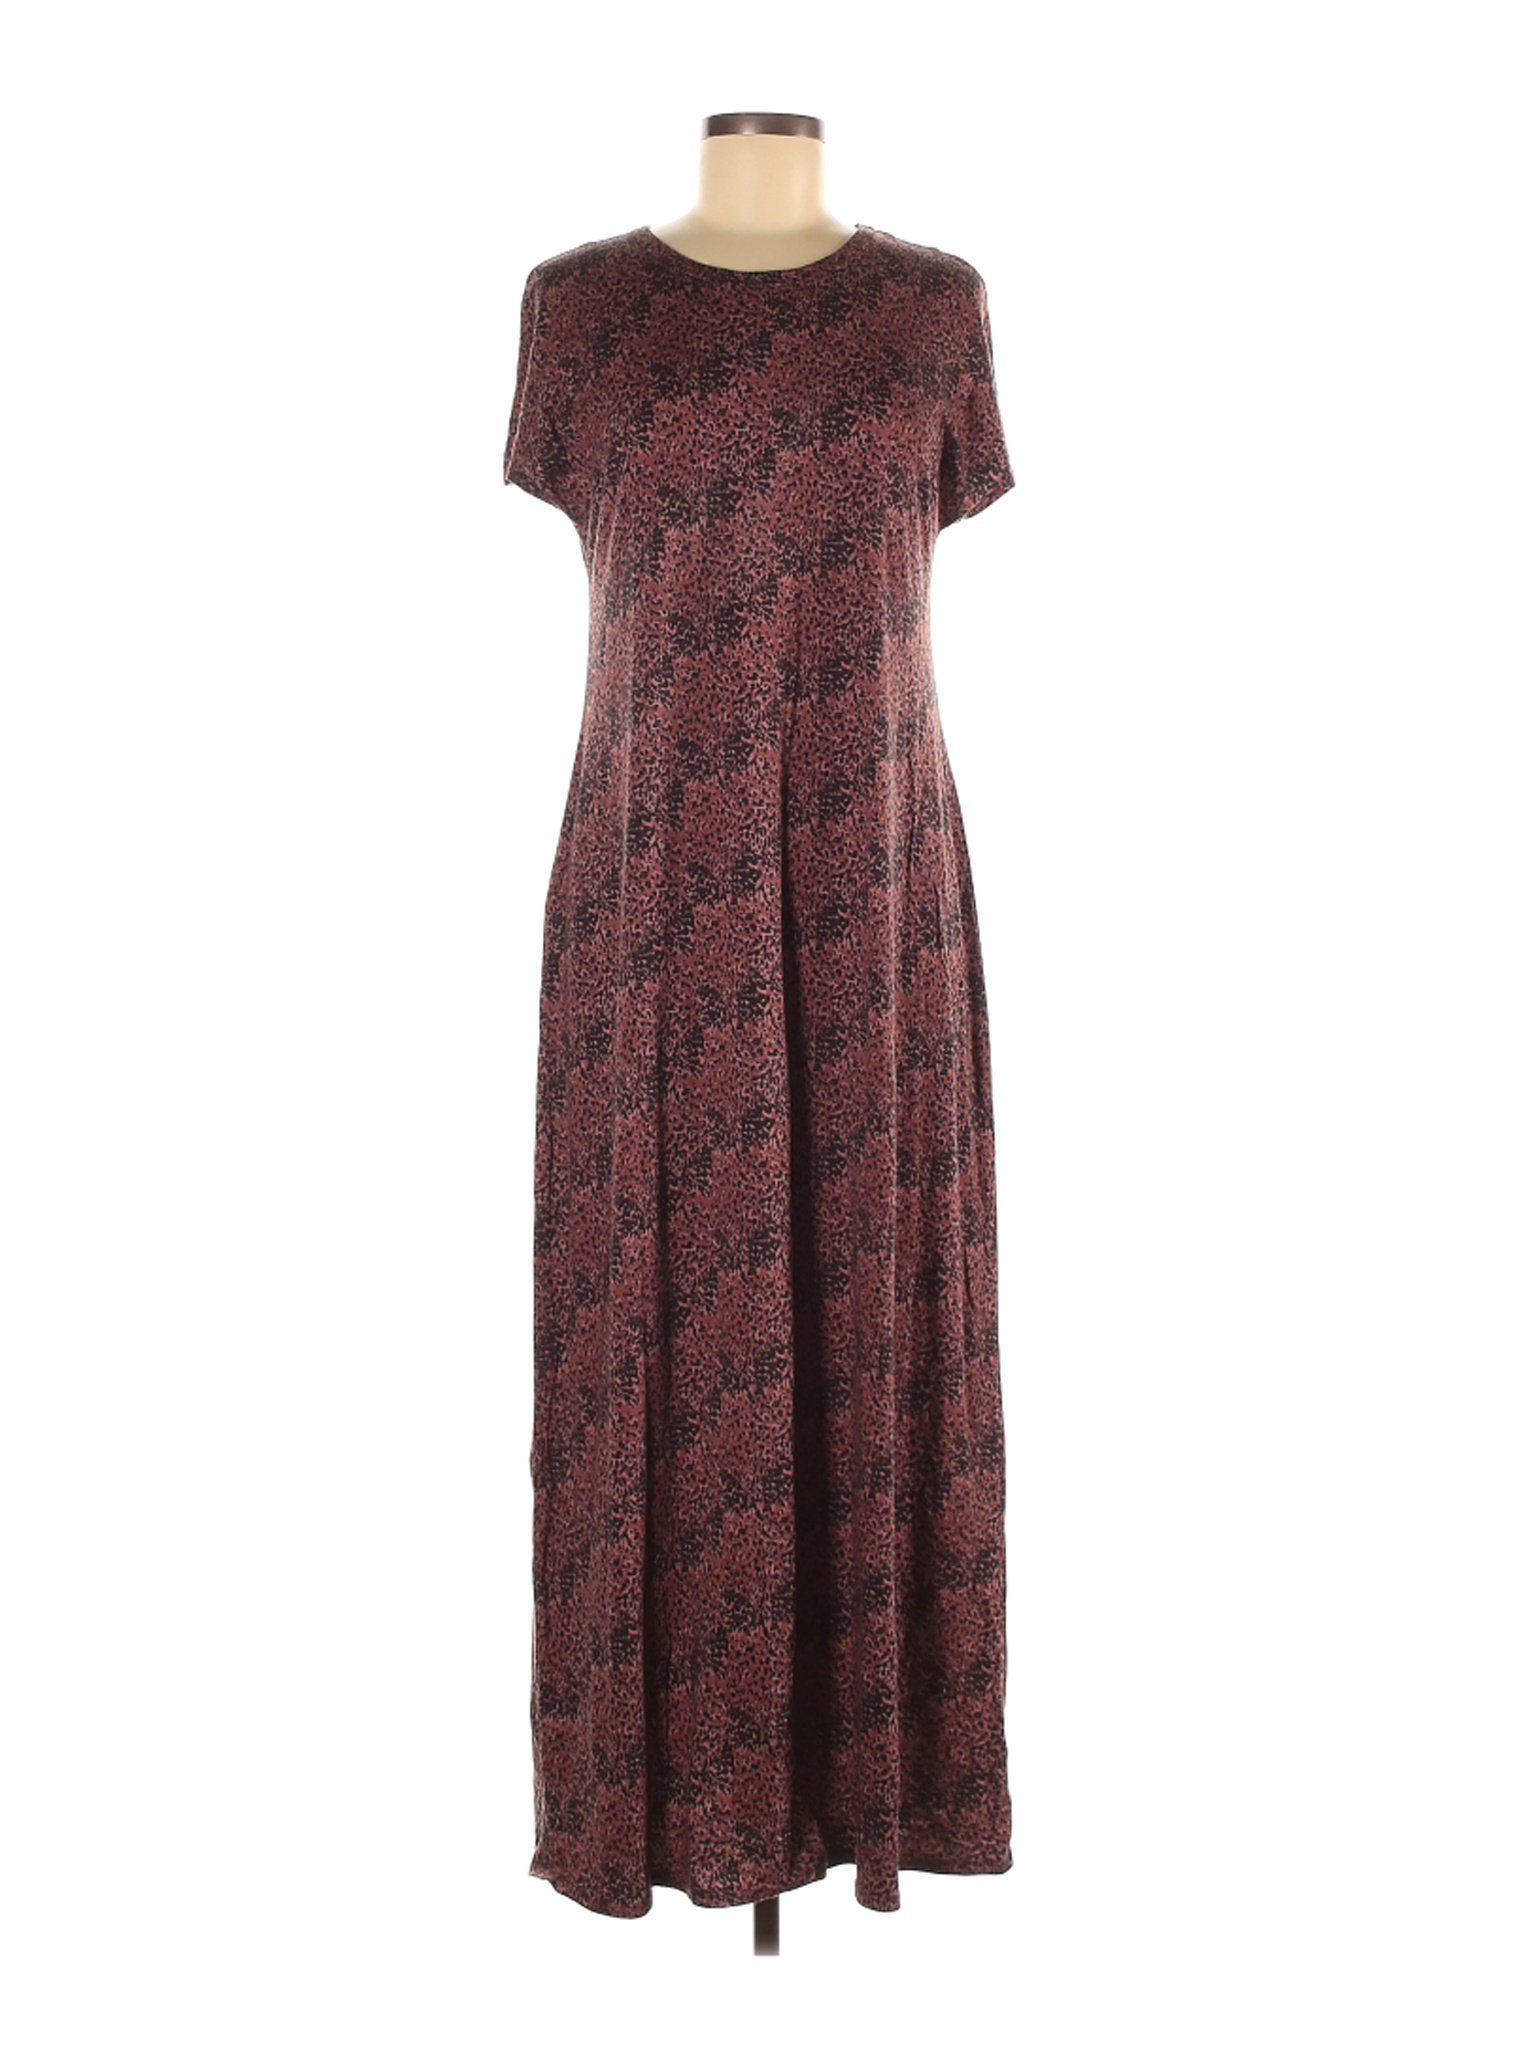 Lularoe Women Brown Casual Dress S | eBay